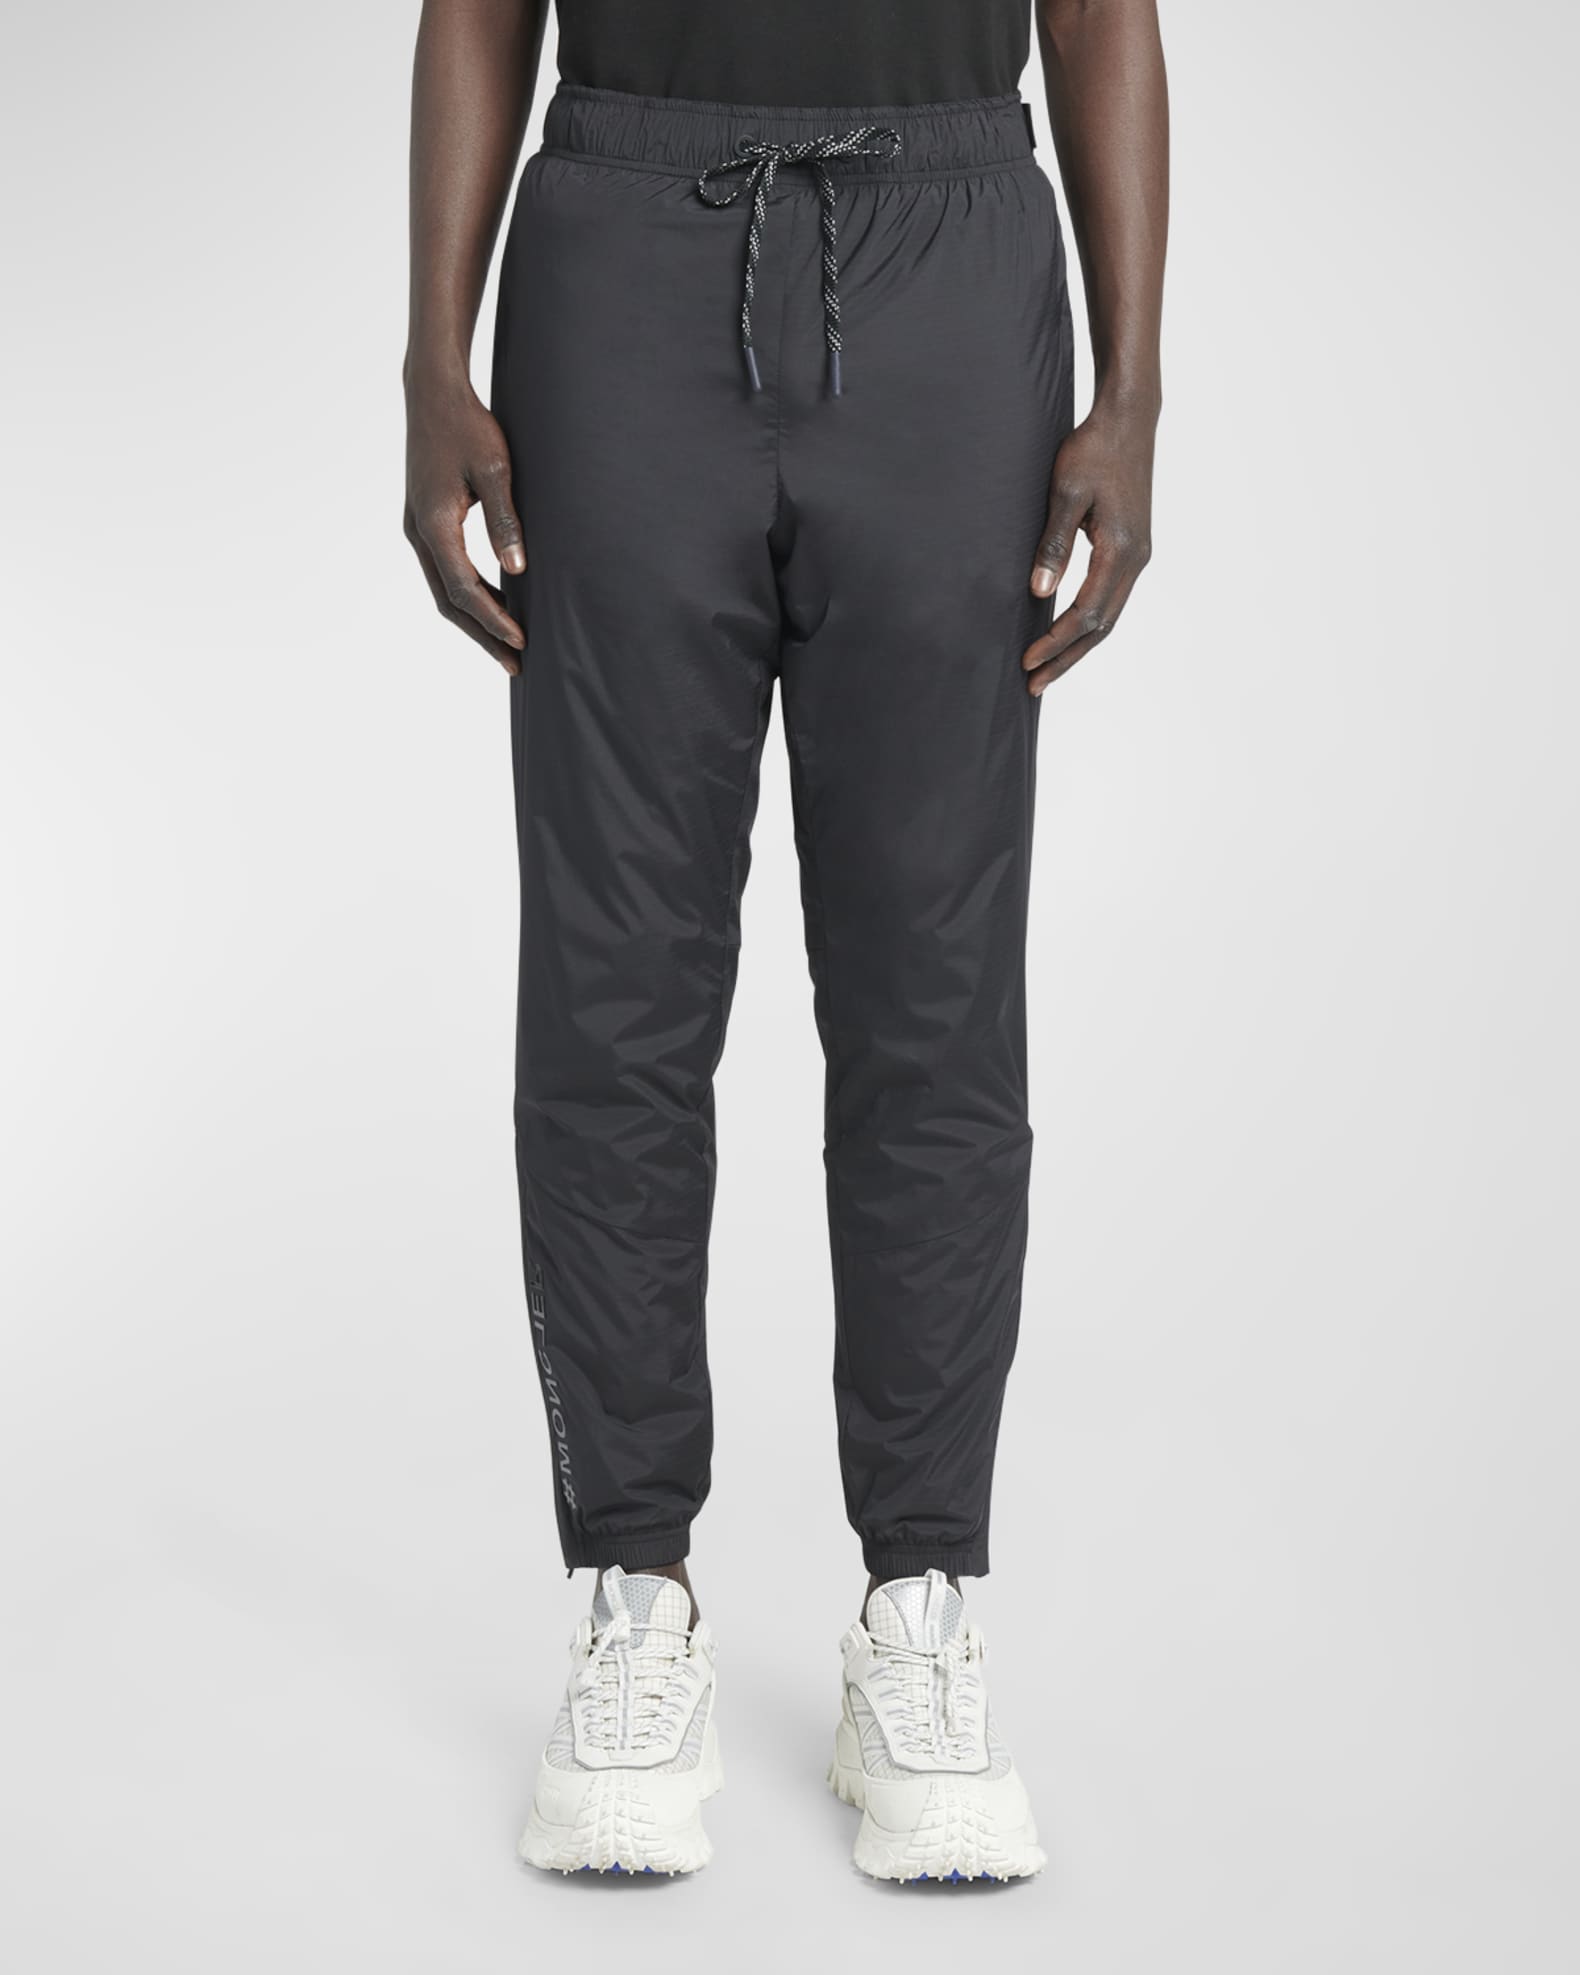 Moncler Grenoble Men's Knit Jogger Pants | Neiman Marcus